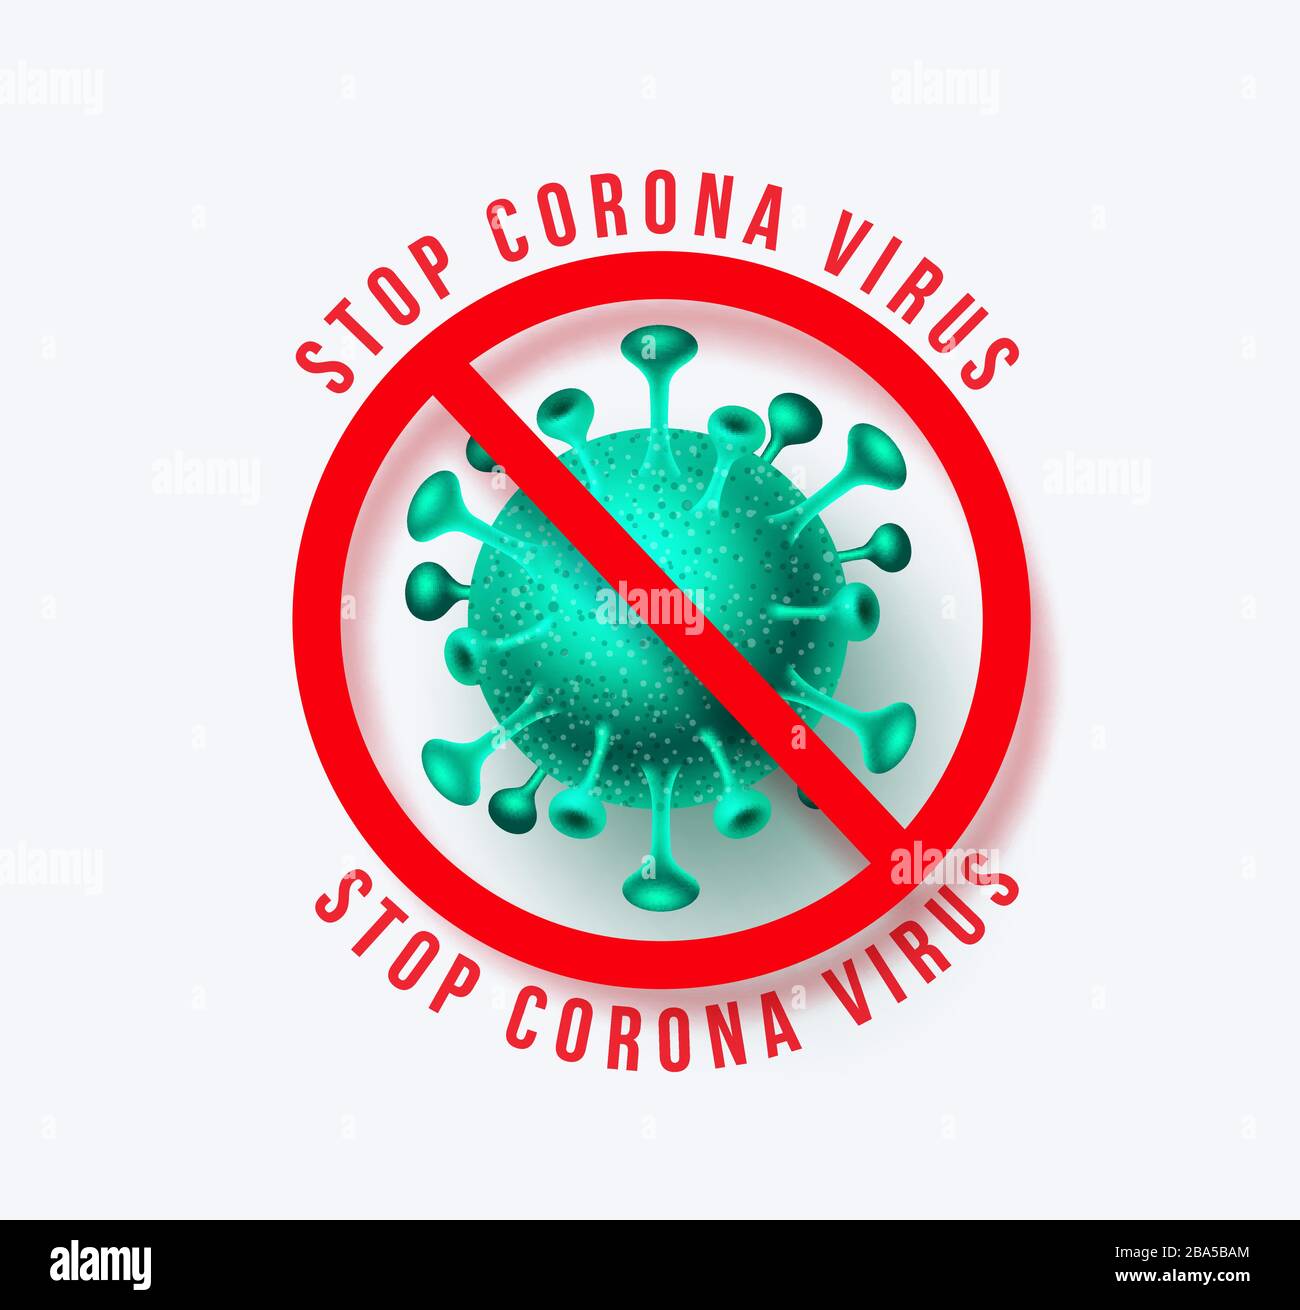 Corona Virenschutz Zeichen Vektor Banner Design. Stoppen Sie die neuartigen Corona-Virus-Text-Signage und die Kovid-19-Ausbruchssymbol des neuartigen Virus, der weiß isoliert ist Stock Vektor